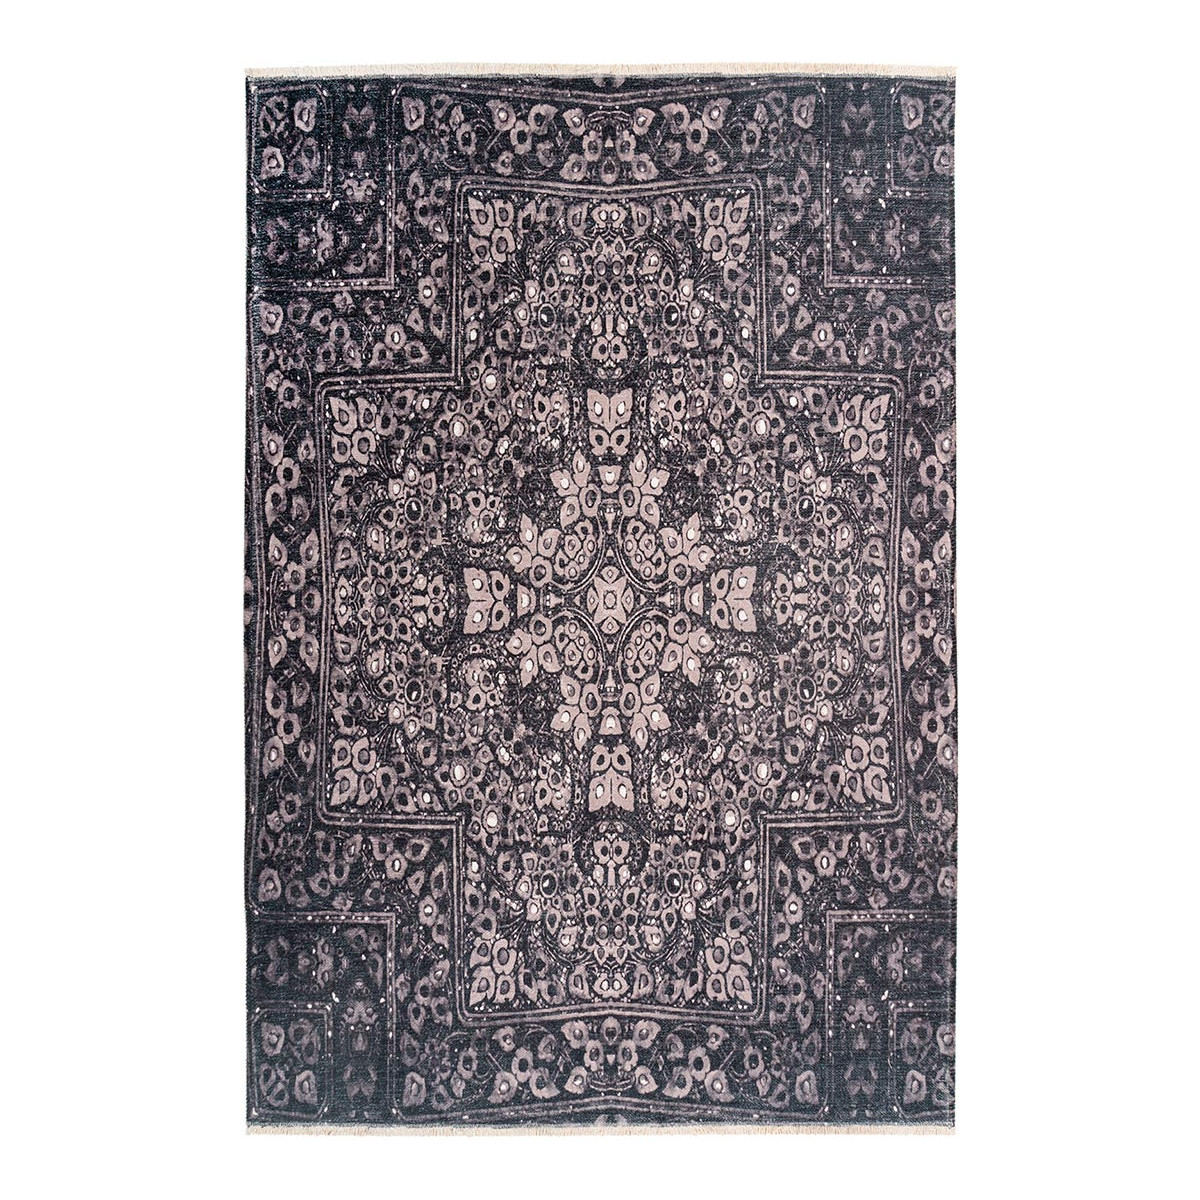 Tapis ethnique en polyester gris 200x290